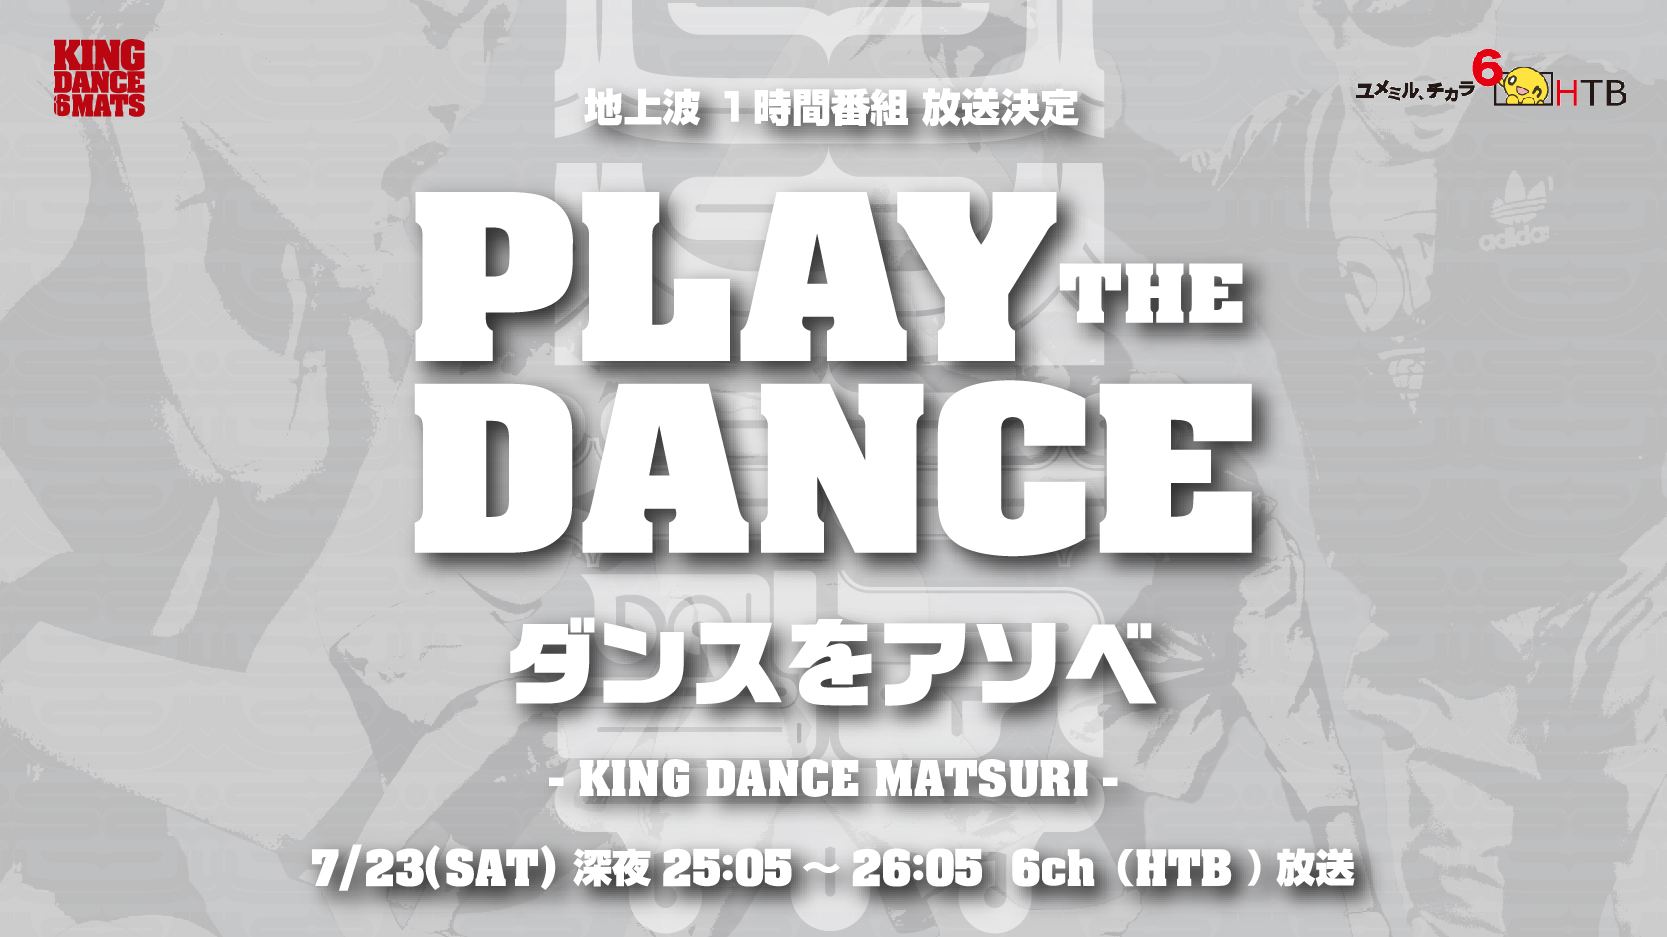 【地上波(6ch) 特番放送決定】PLAY THE DANCE ダンスをアソベ〜KING DANCE MATSURI〜